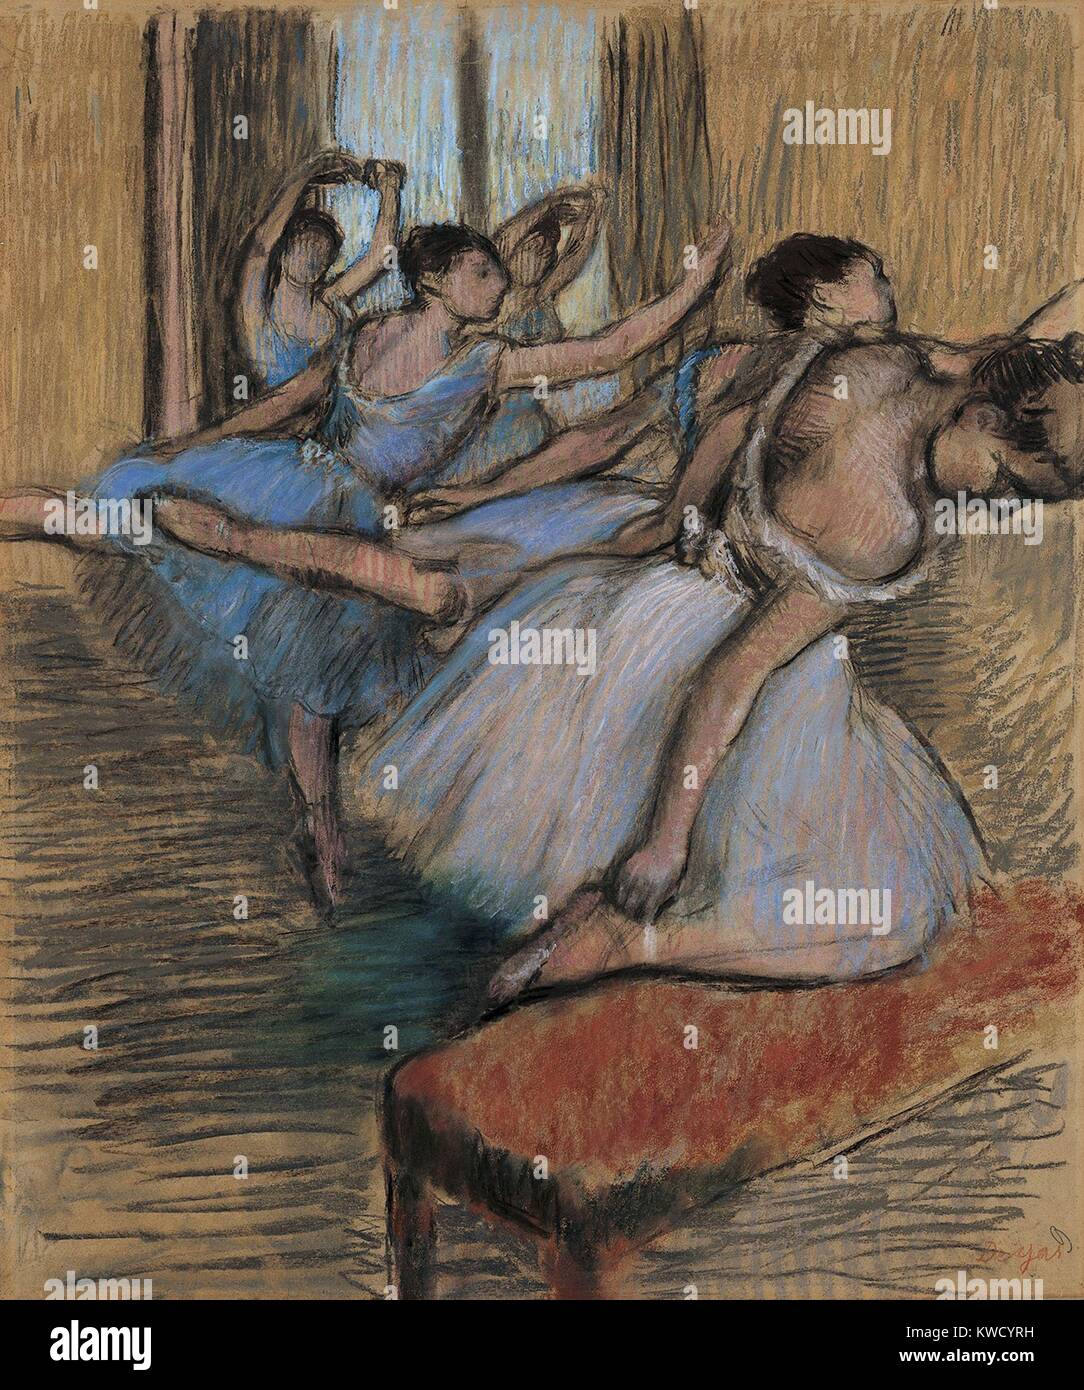 I ballerini, di Edgar Degas, 1900, impressionista francese disegno, pastello e carboncino su carta. Degas detto commerciante di arte Ambroise Vollard, per me la danza è un pretesto per la verniciatura piuttosto costumi e movimento di rendering (BSLOC 2017 3 111) Foto Stock